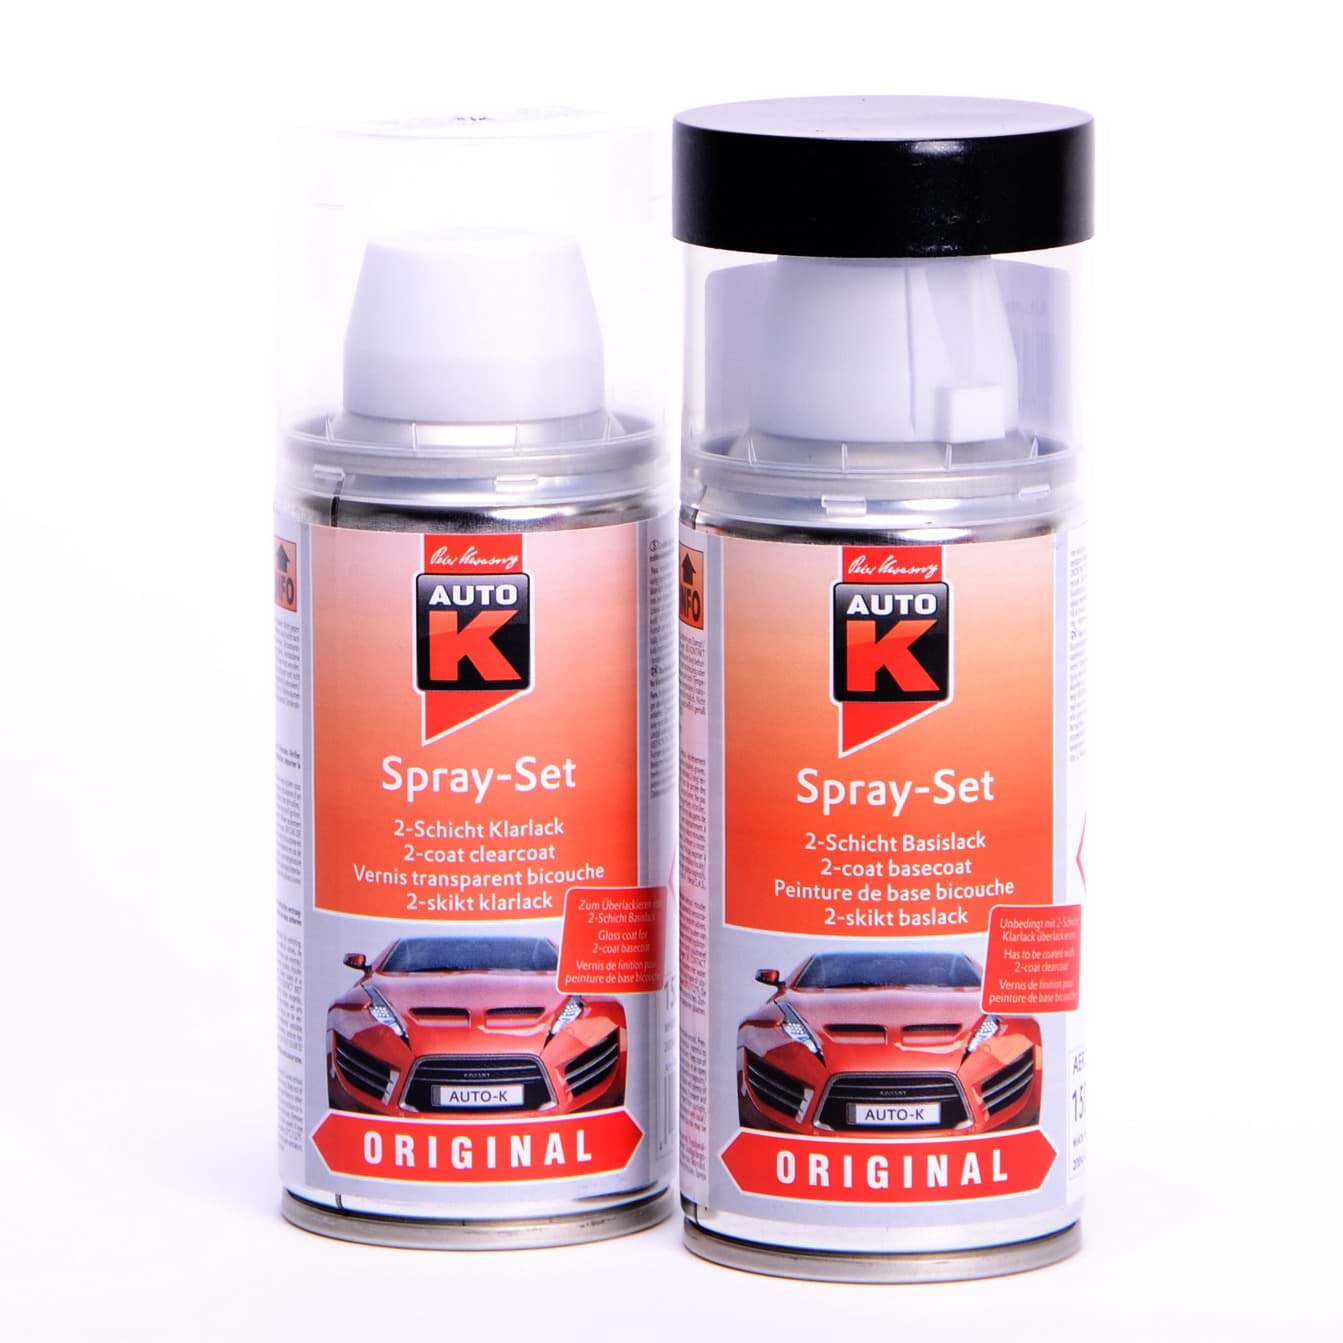 Picture of Auto-K Spray-Set Autolack für Opel 485 Ananasgelb 21417